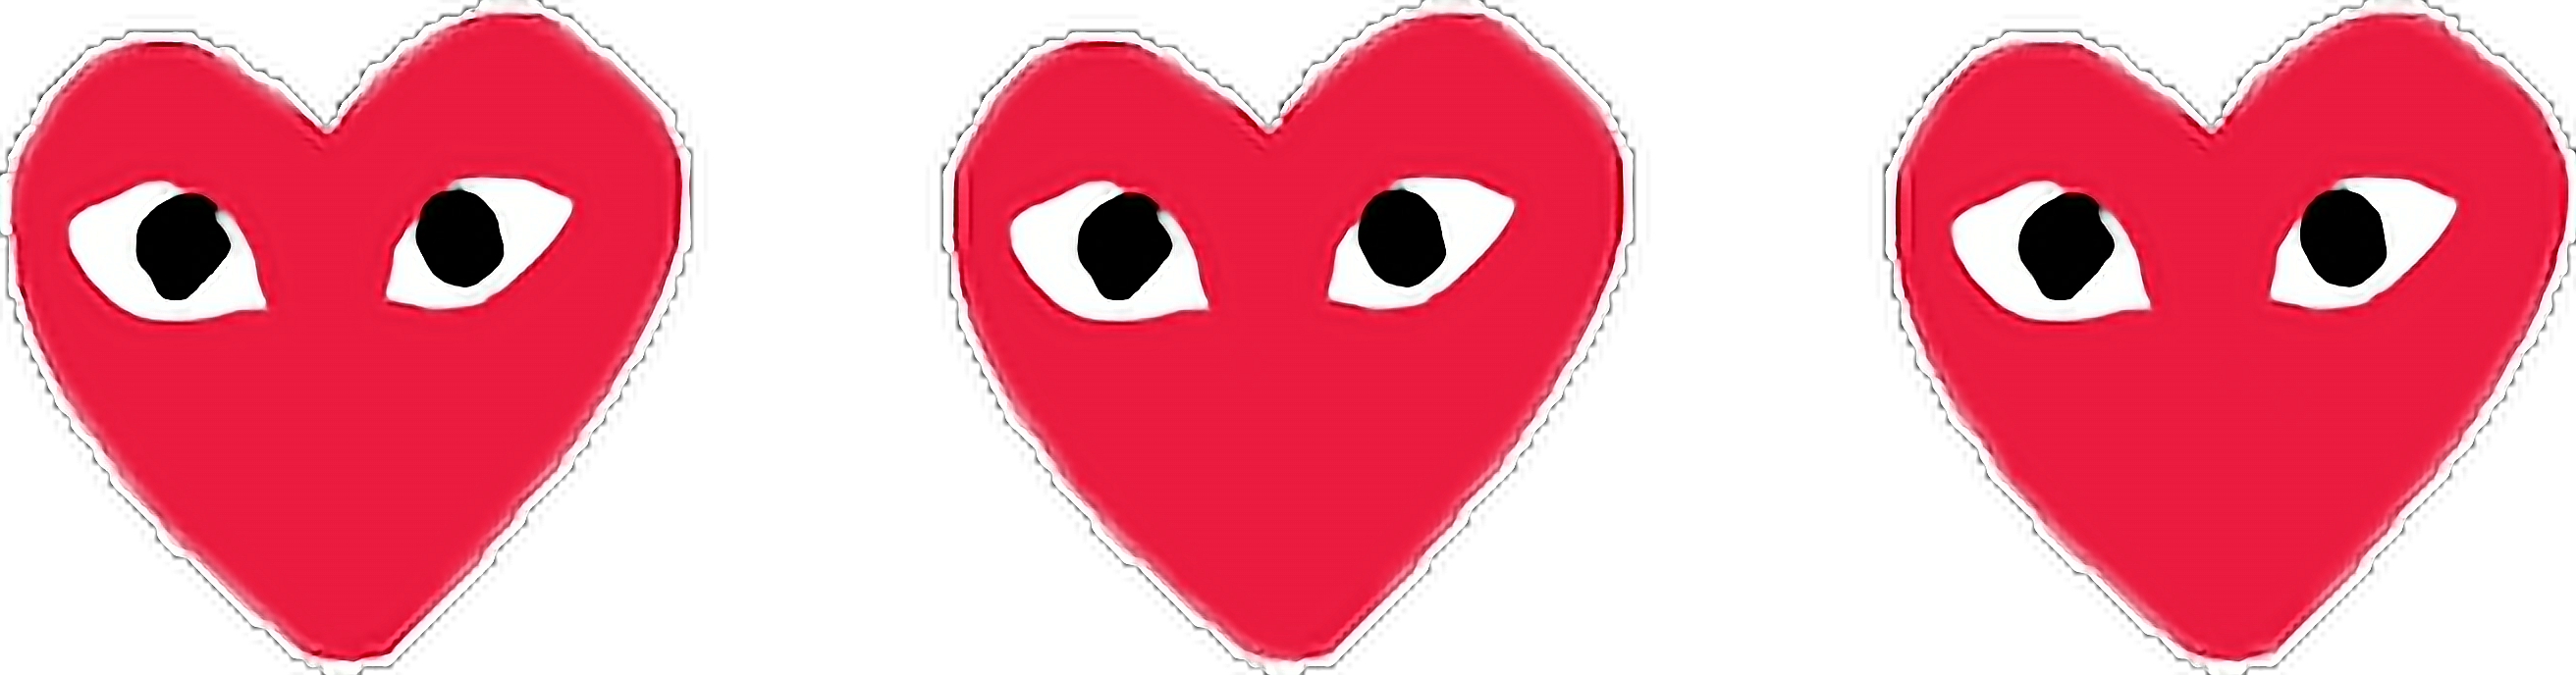 sticker hearts love redheart eyes sticker by @aleelarte